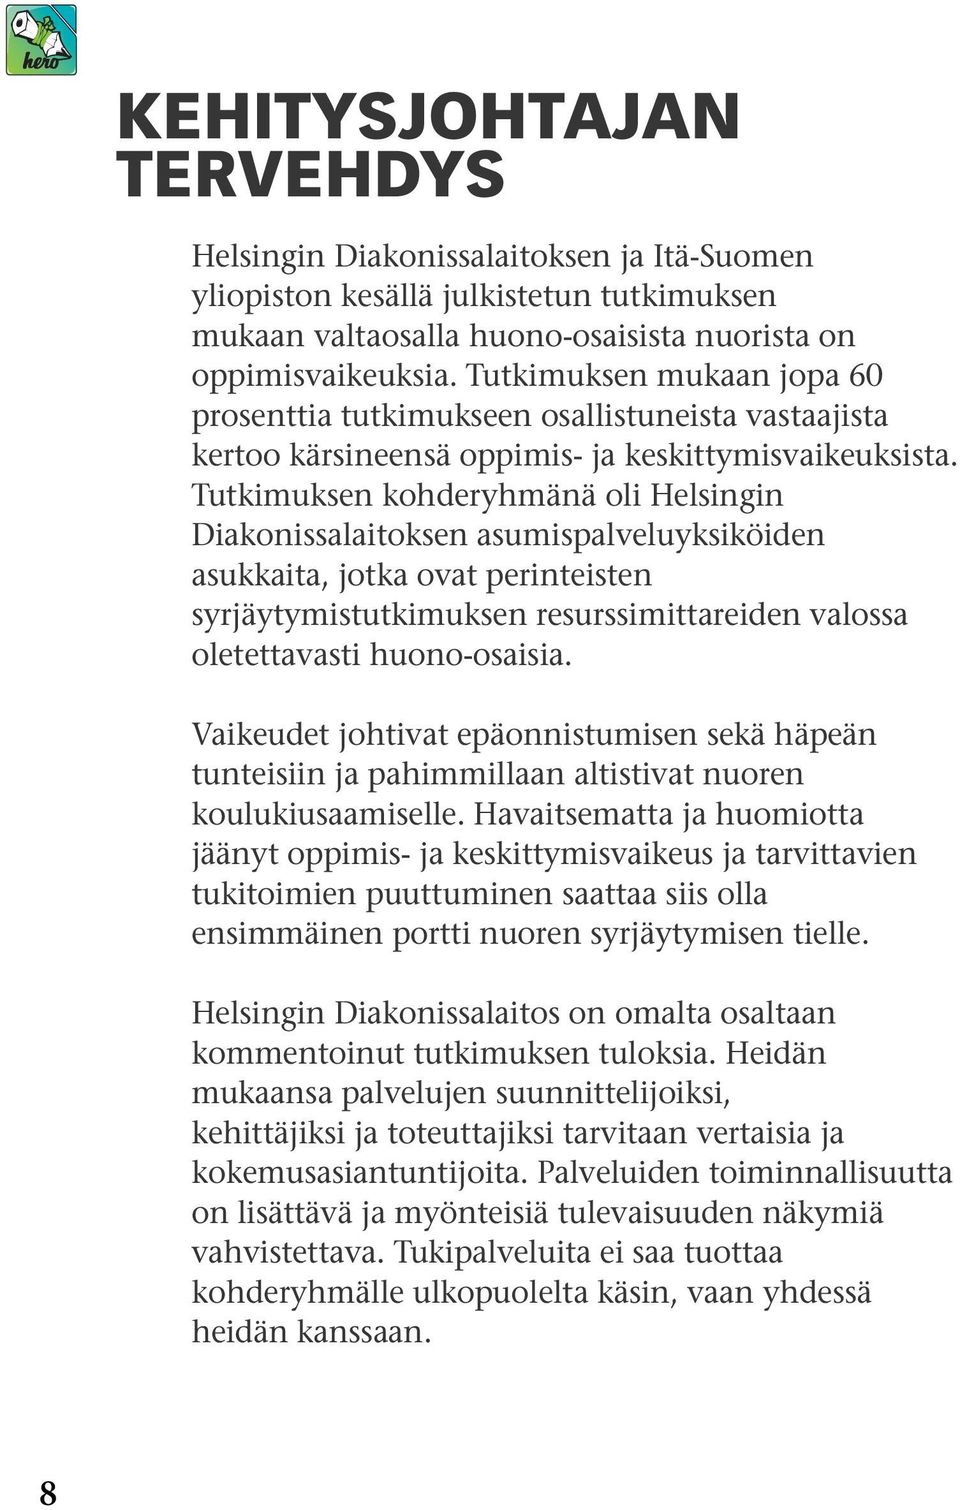 Tutkimuksen kohderyhmänä oli Helsingin Diakonissalaitoksen asumispalveluyksiköiden asukkaita, jotka ovat perinteisten syrjäytymistutkimuksen resurssimittareiden valossa oletettavasti huono-osaisia.